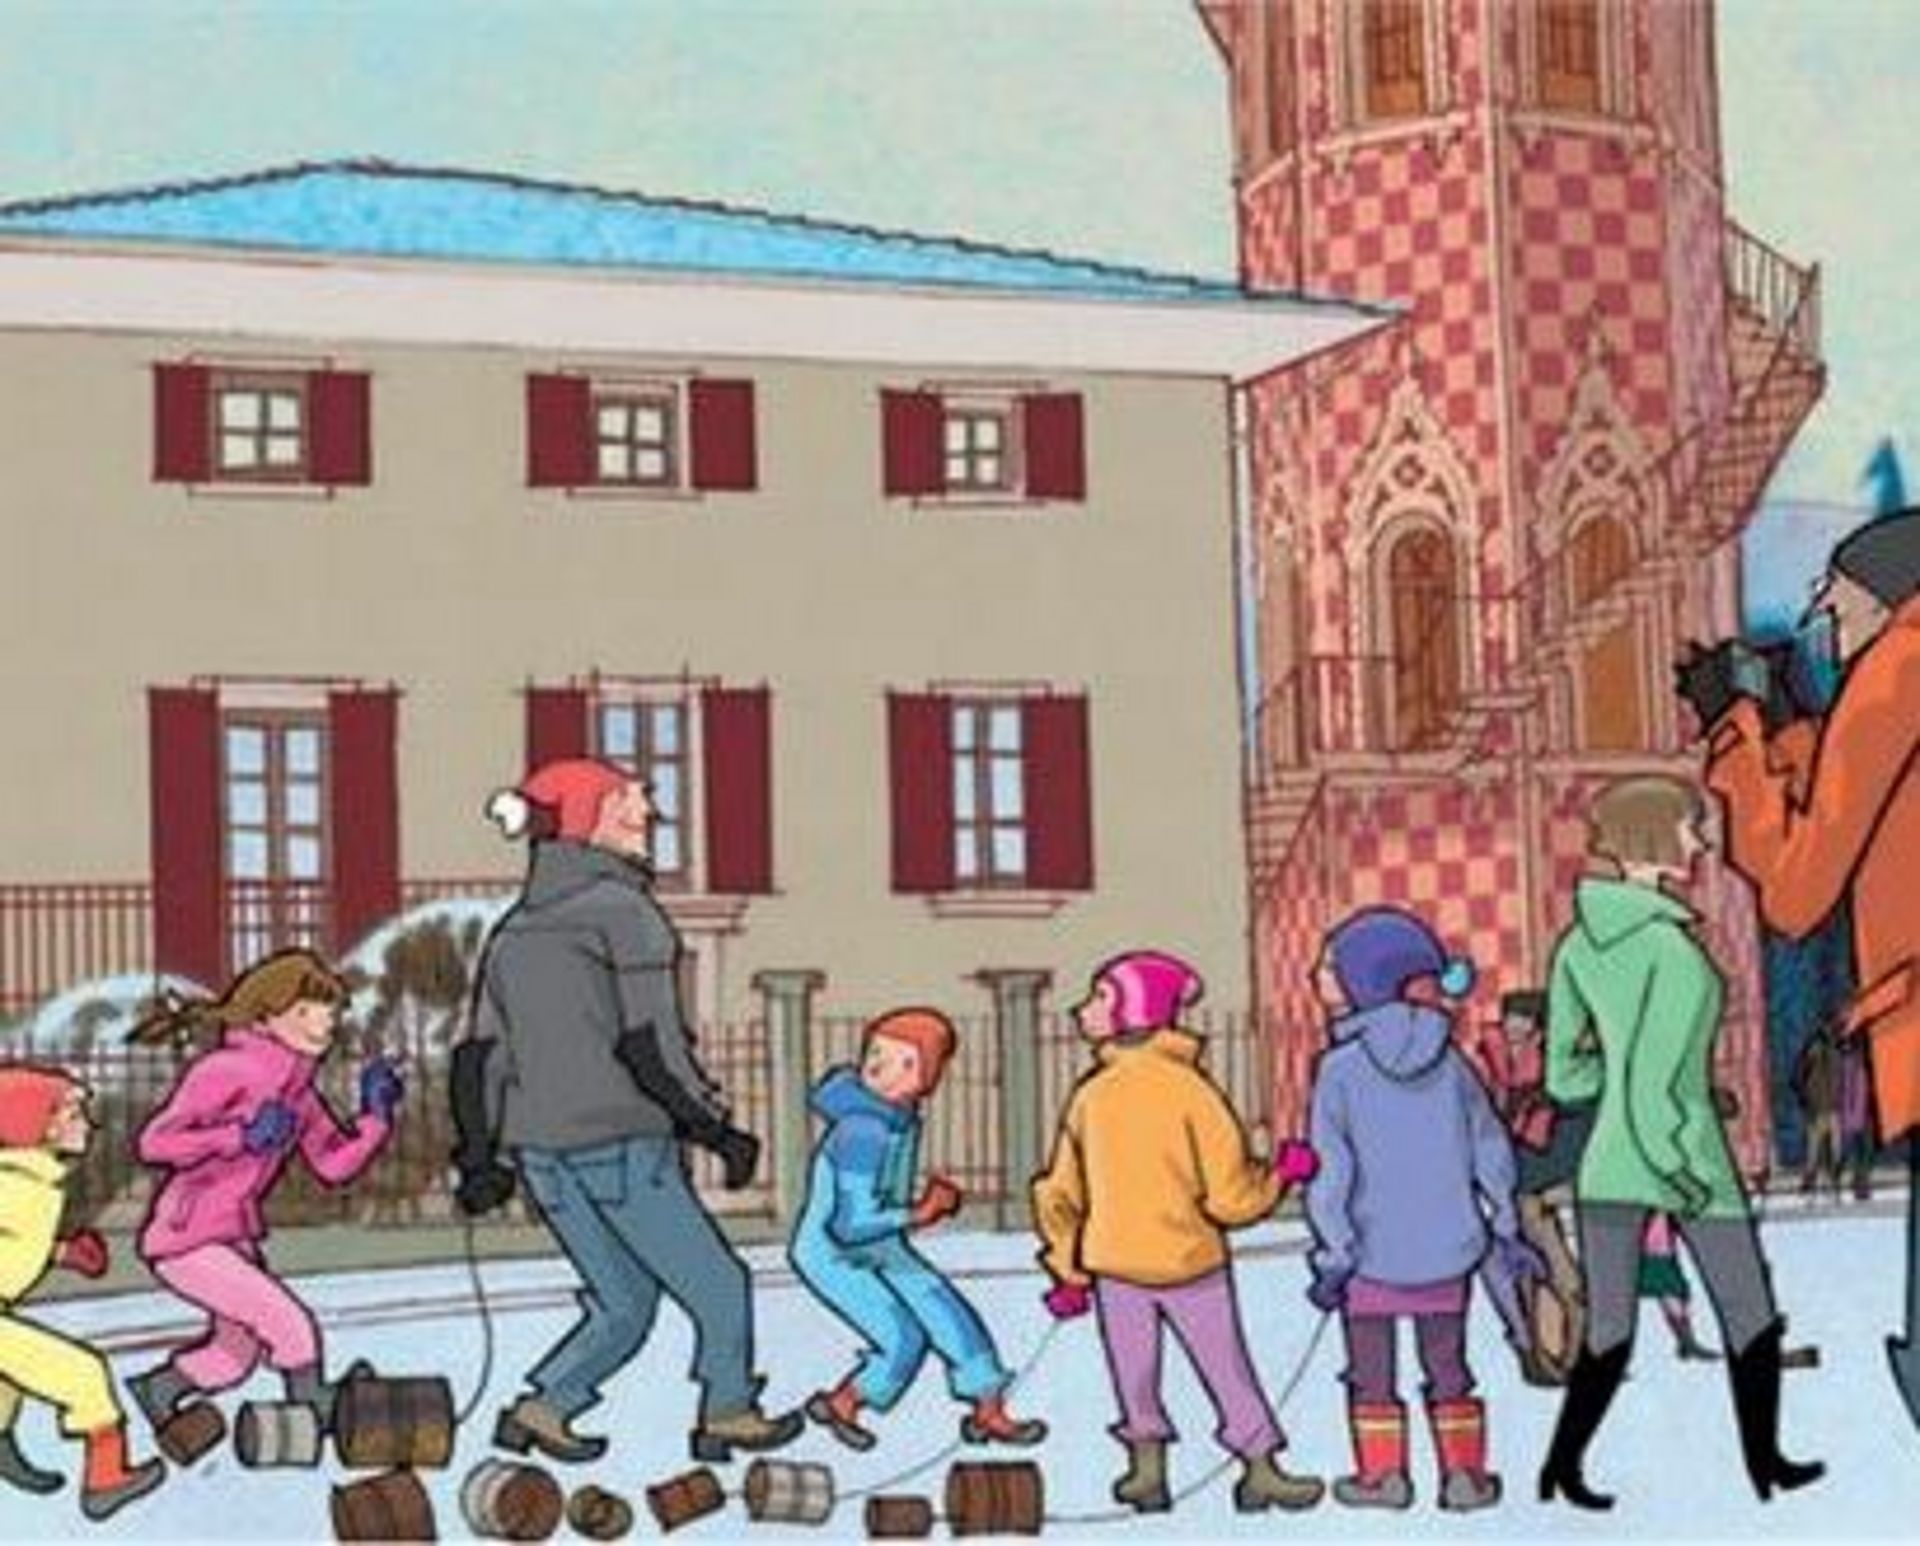 Zeichentrickformat: Kinder ziehen an einem Wintertag Gegenstände hinter sich her, die in den Straßen Lärm erzeugen sollen.